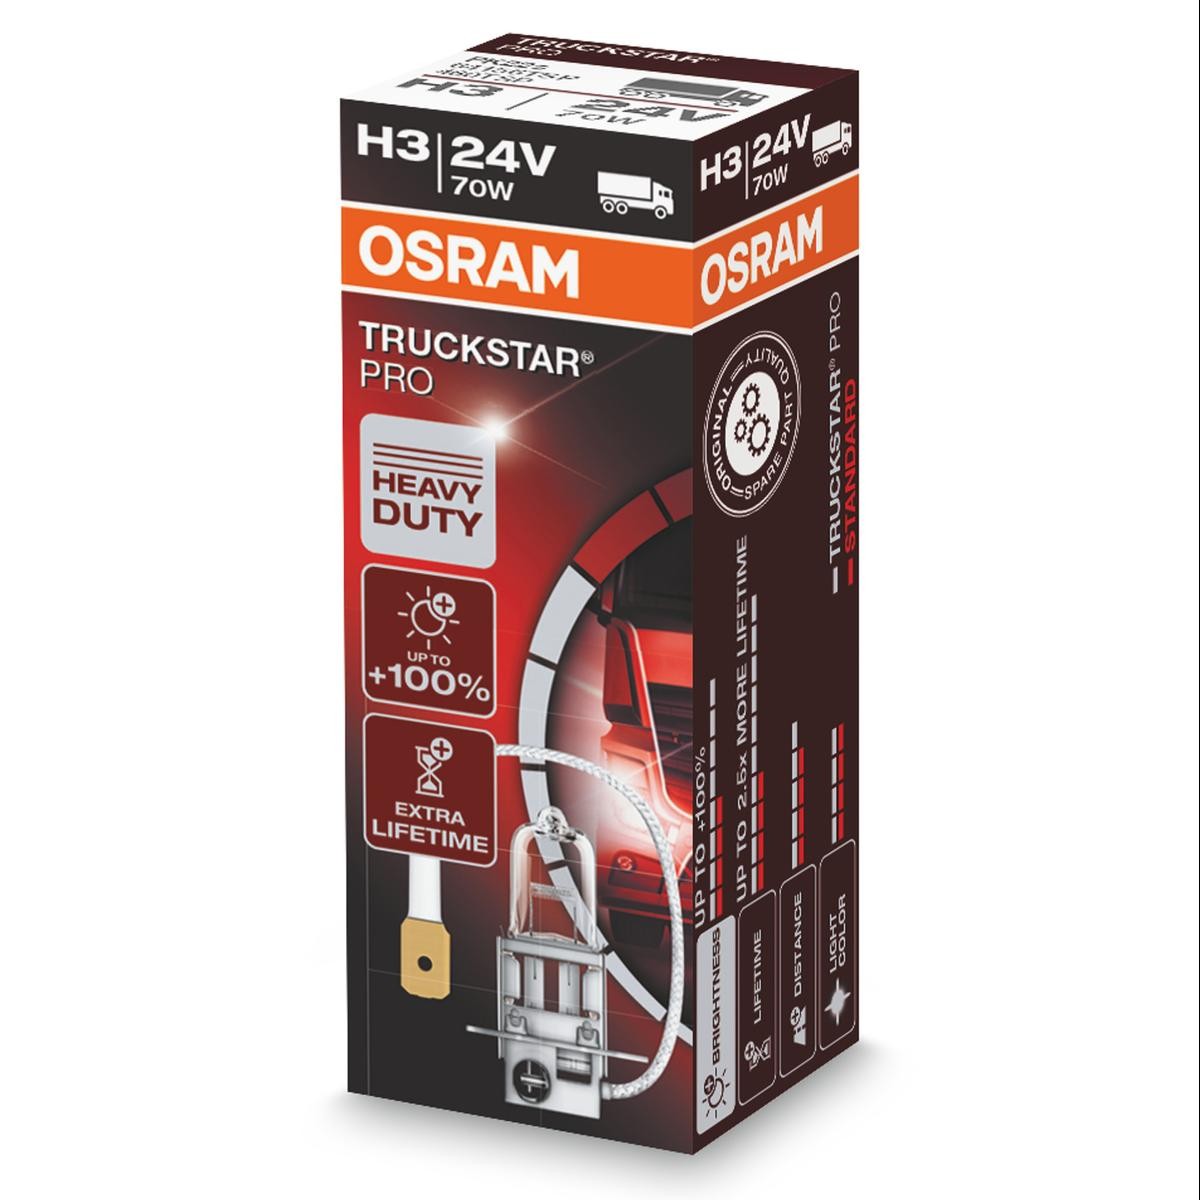 H3 OSRAM TRUCKSTAR PRO H3 24V 70W PK22s, 3200K, Halogen High beam bulb 64156TSP buy